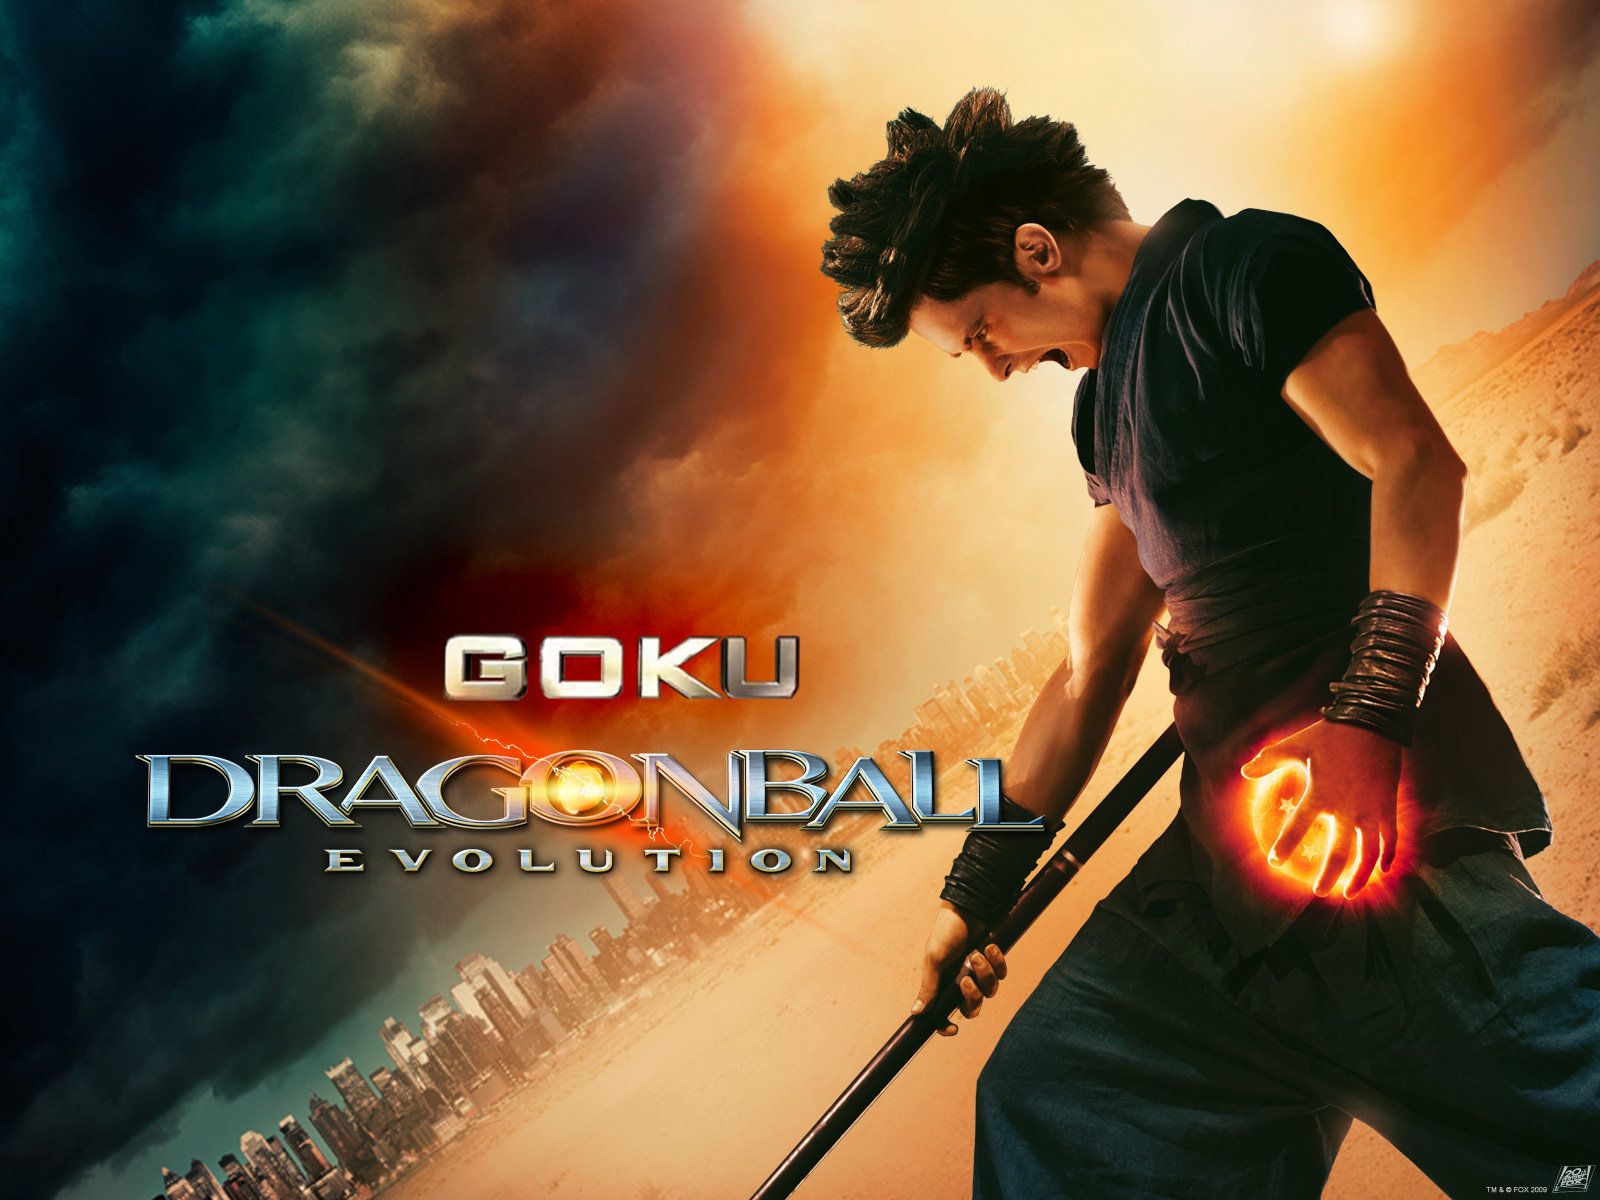 Trailer do filme Dragonball Evolution - Dragonball Evolution